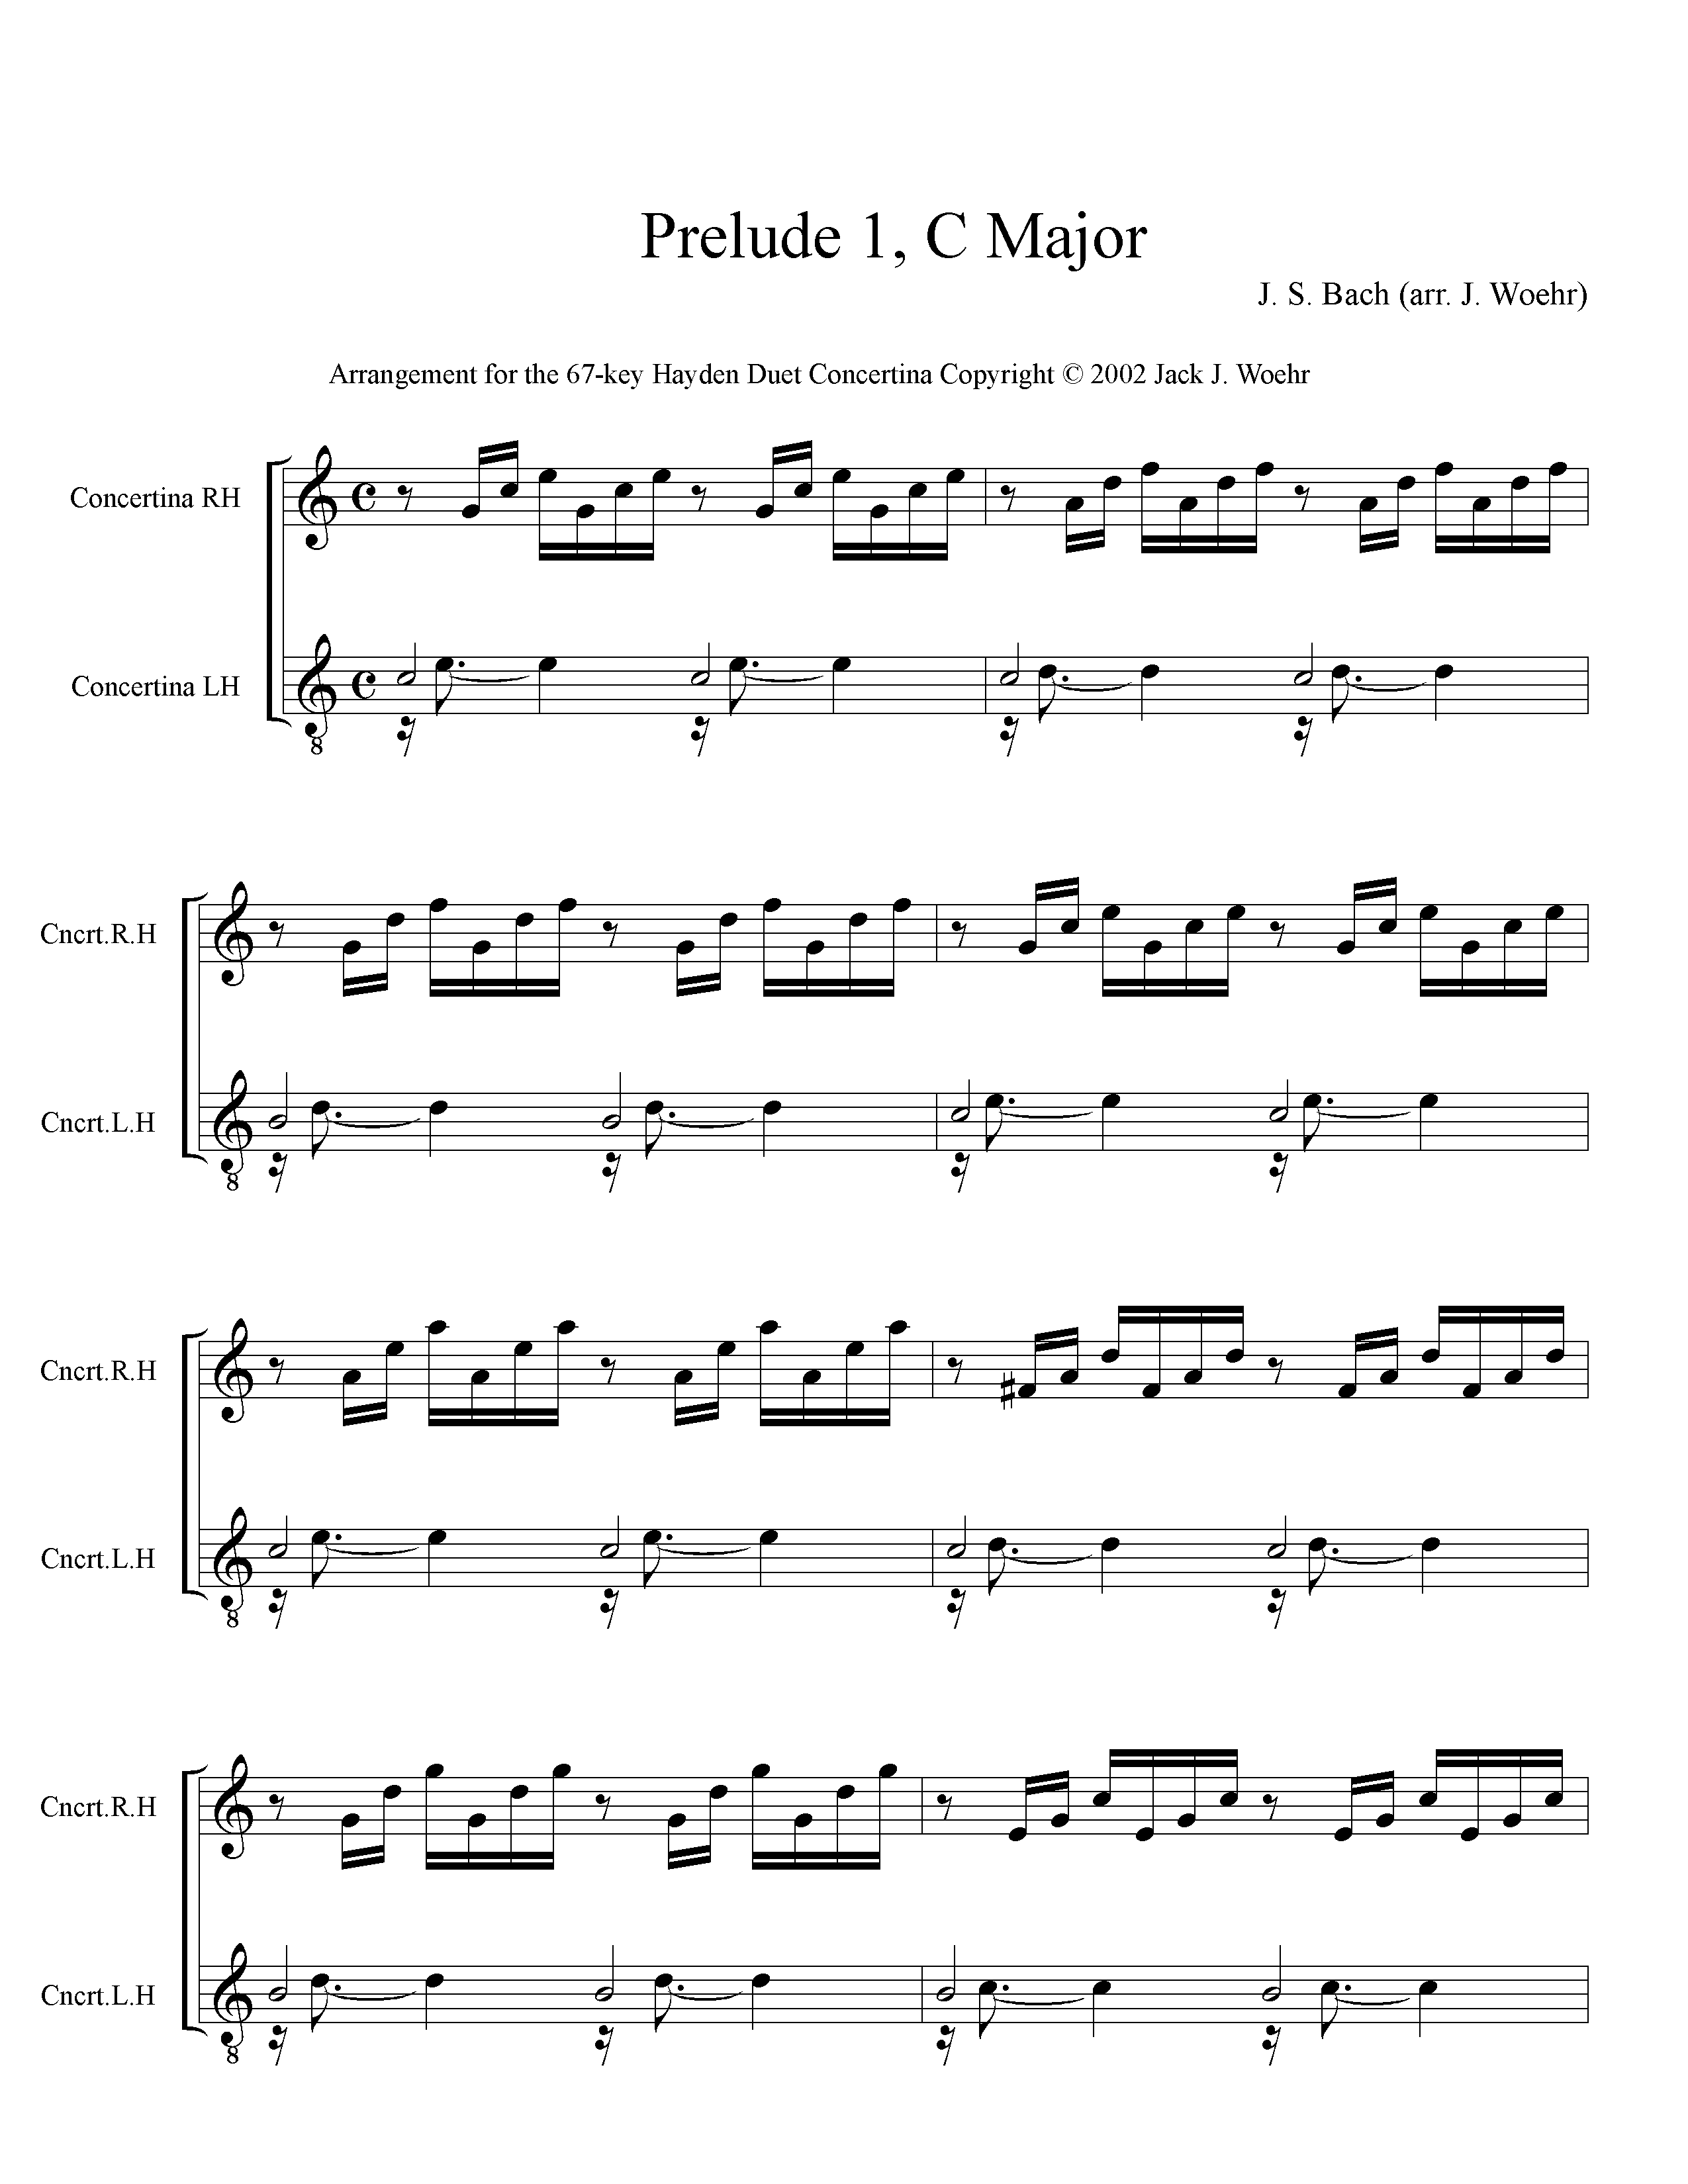 Page 1 (of 4) of J. S. Back Prelude 1 in C Major - Hayden Duet Arrangment